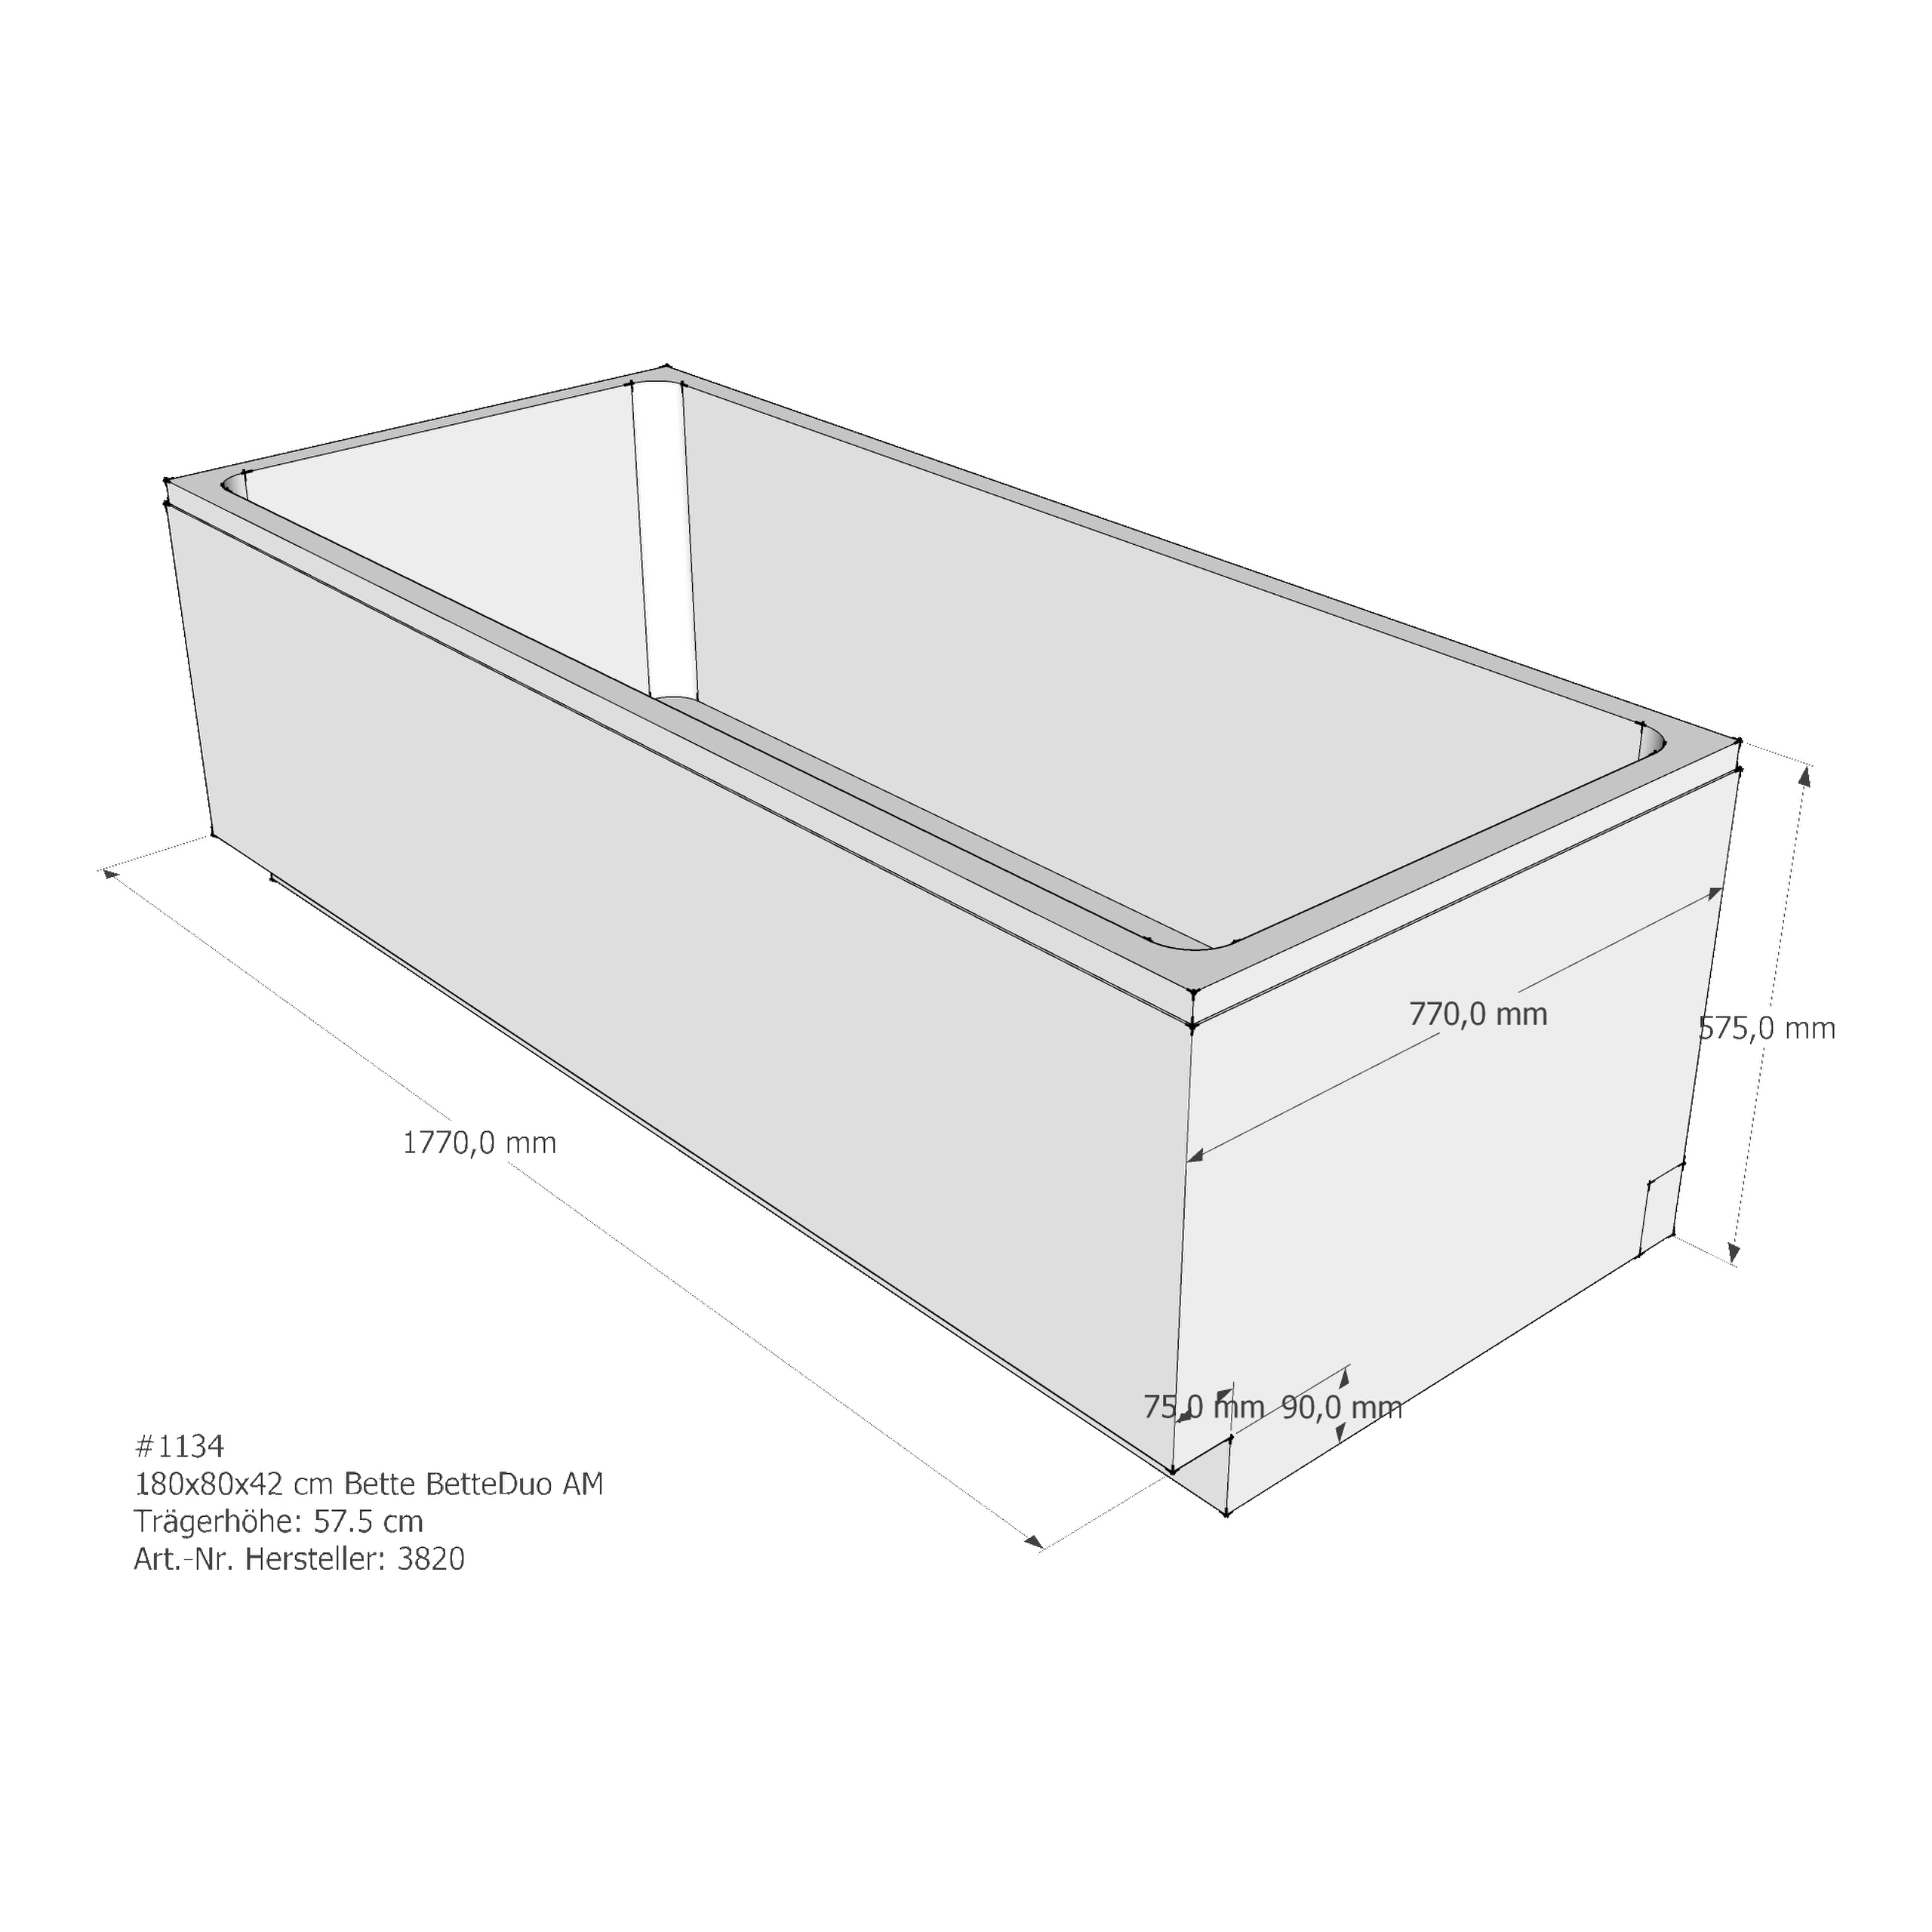 Badewannenträger für Bette BetteDuo 180 × 80 × 42 cm